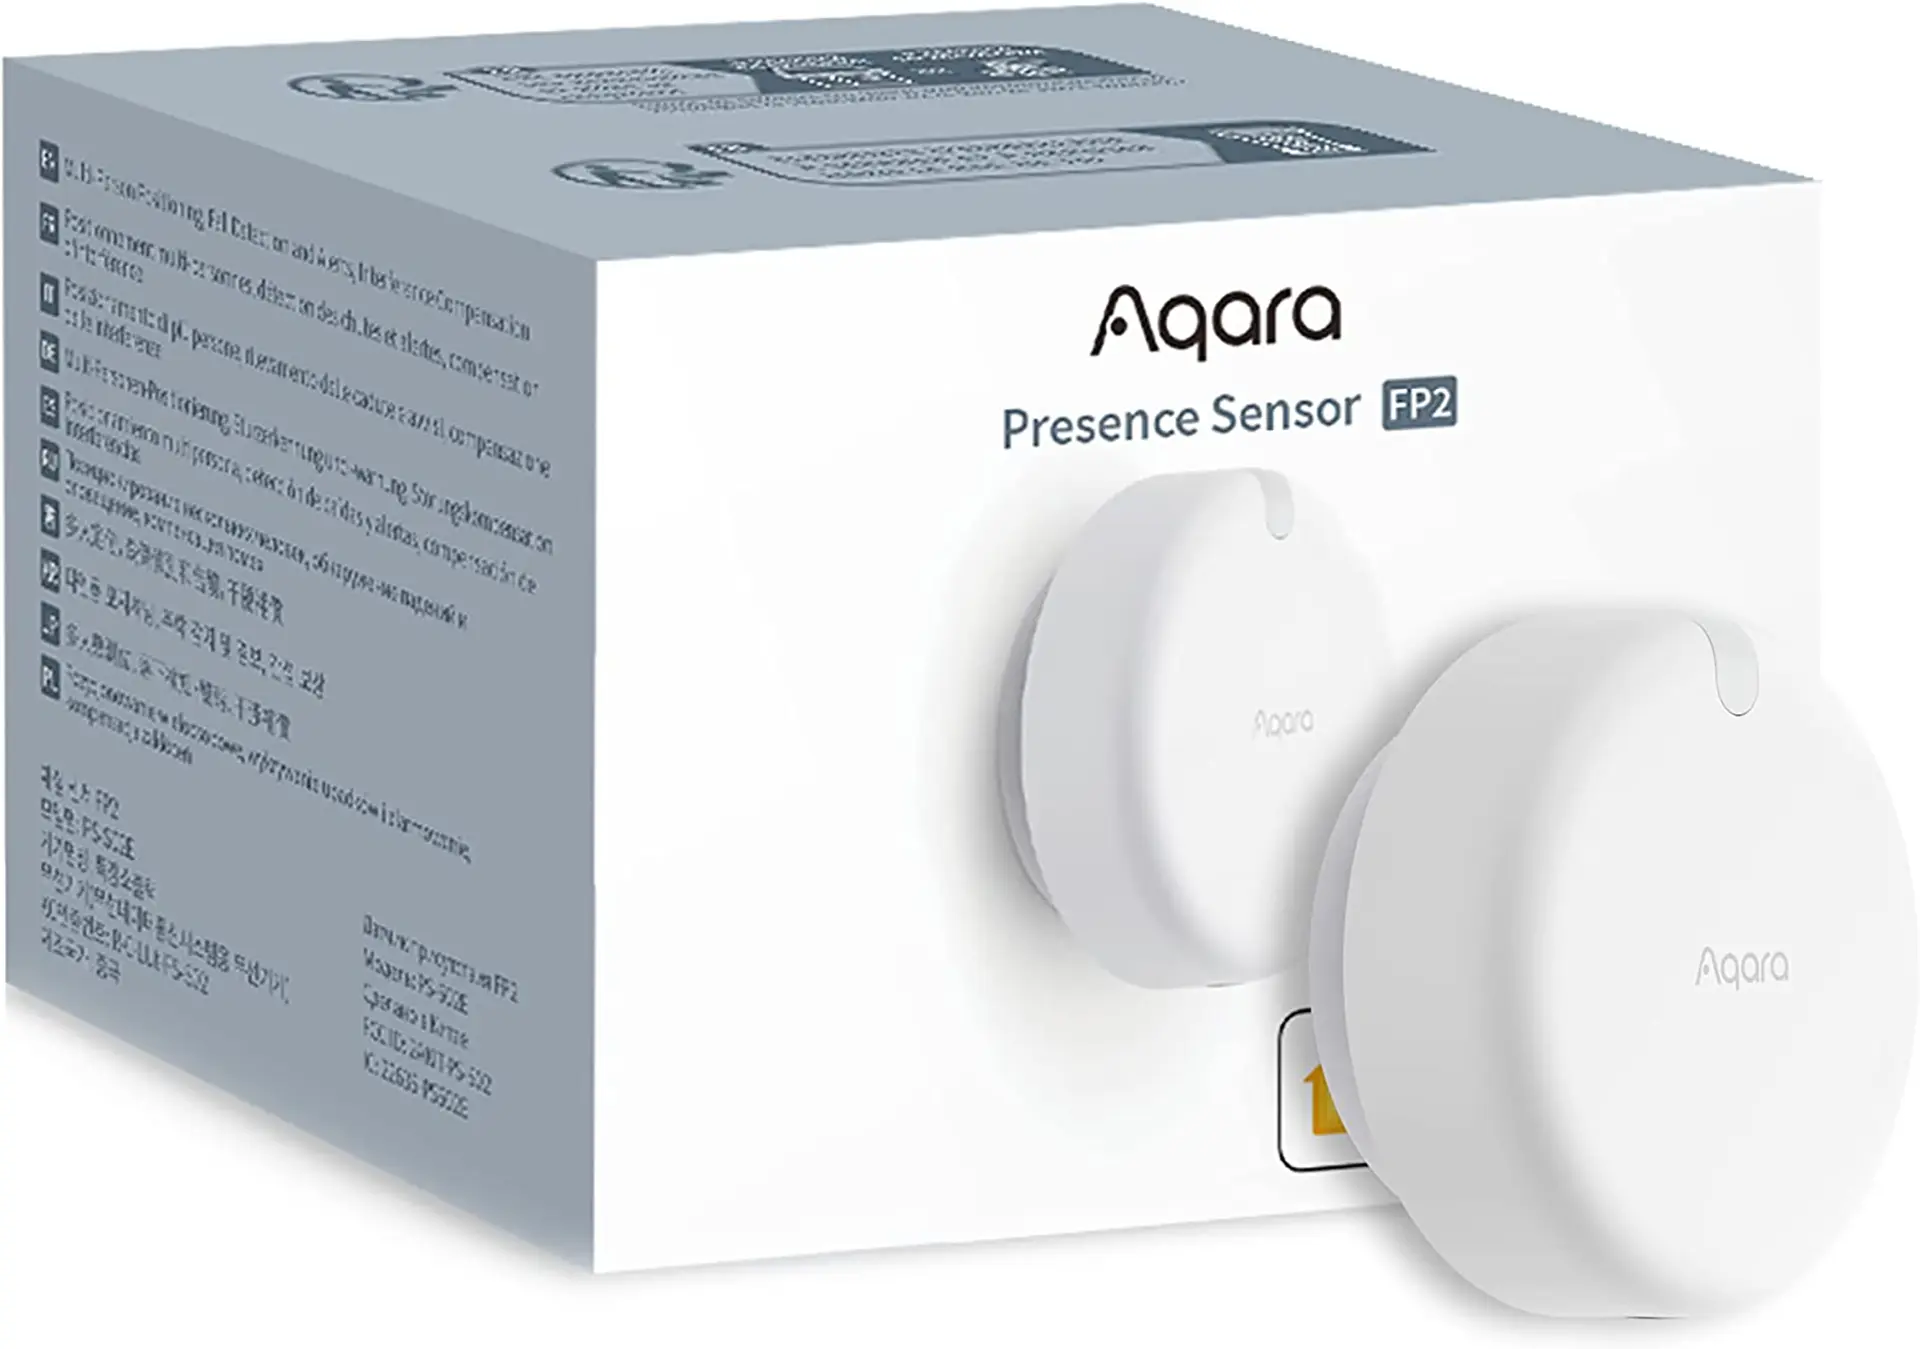 Aqara lanza el revolucionario Presence Sensor FP2